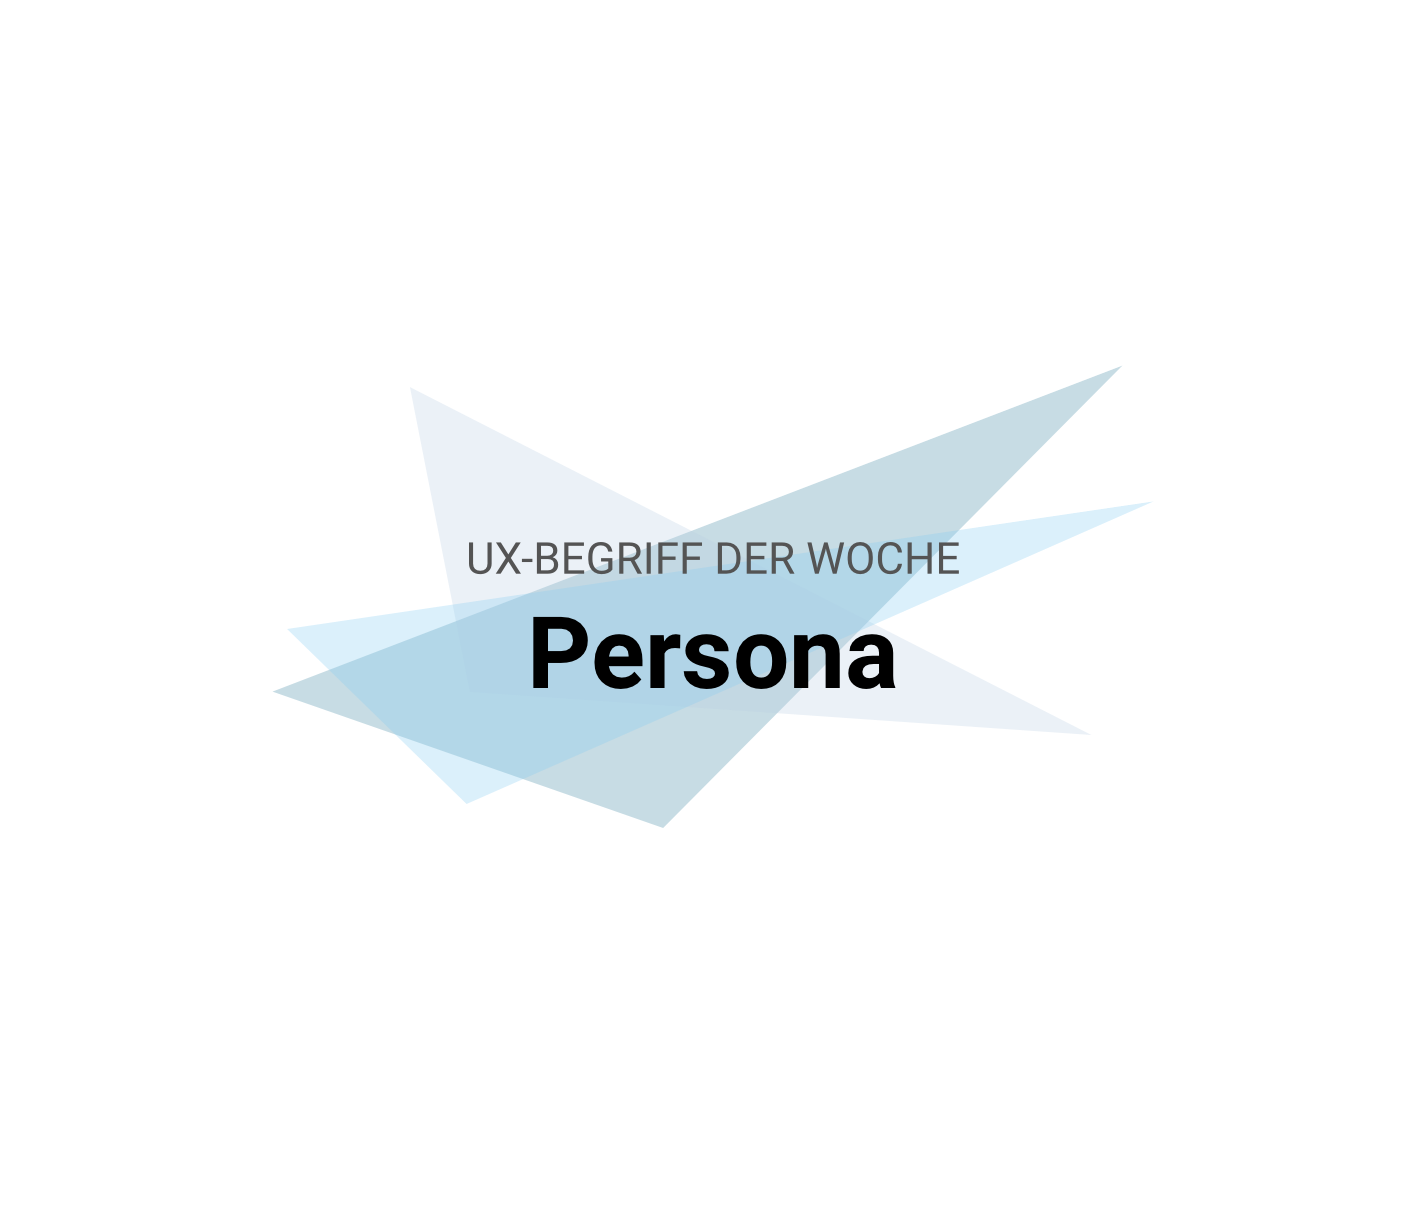 UX-Begriffe kurz erklärt: "Persona"